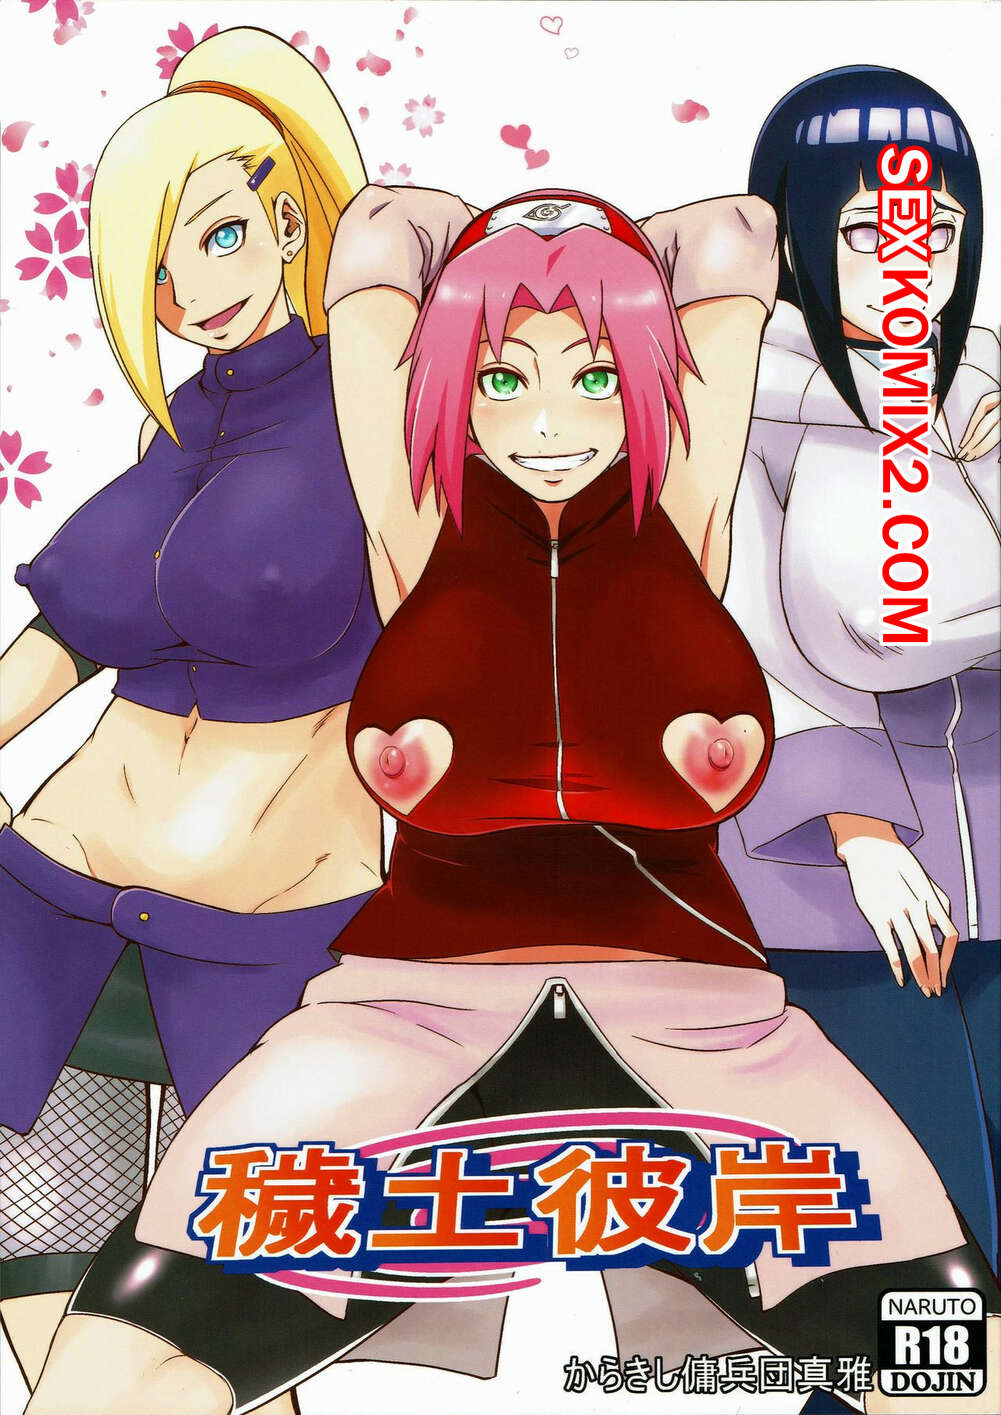 Naruto porn comics sahara wataru